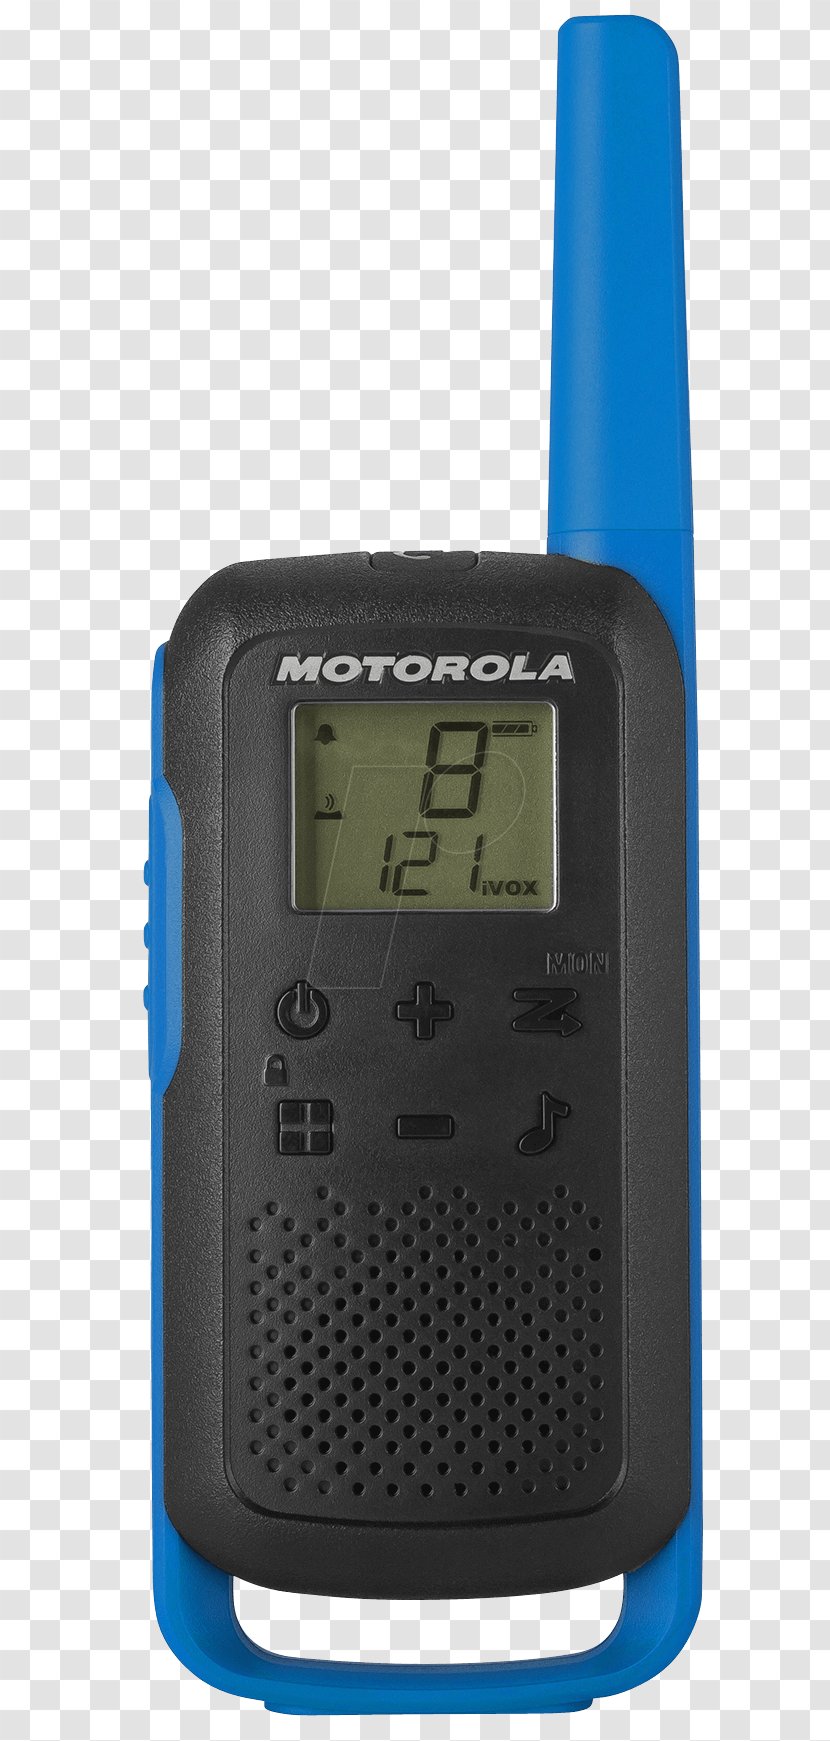 Handheld Two-Way Radios Motorola TALKABOUT T62 Hardware/Electronic PMR446 TLKR Walkie Talkie - Communication Device - Startac Transparent PNG